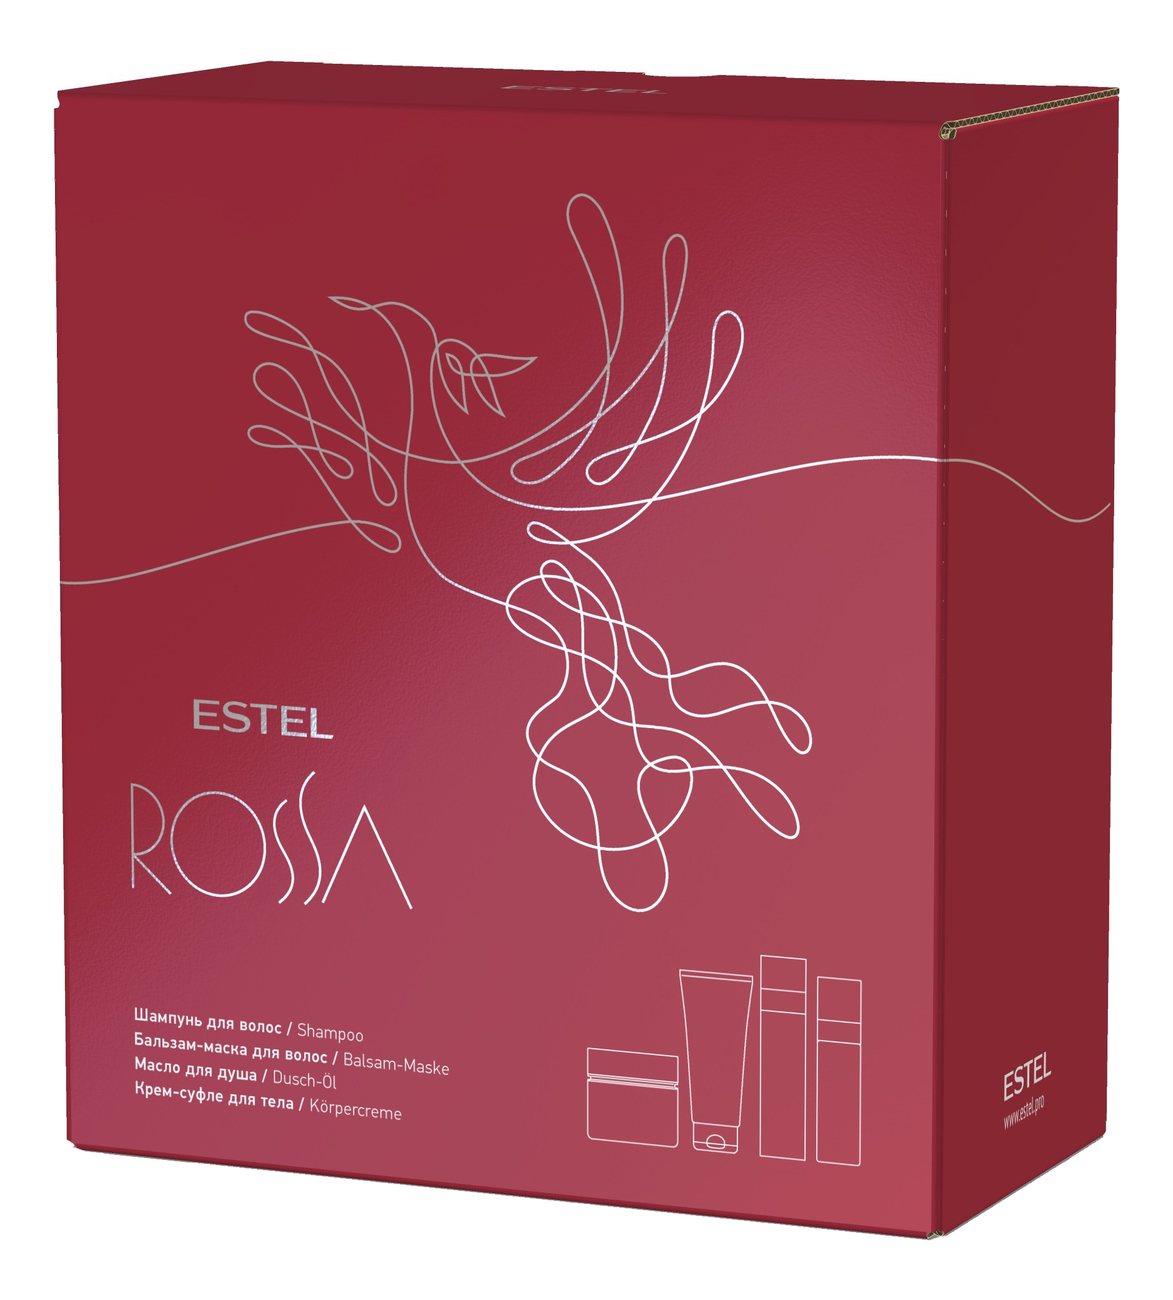 Набор Rossa (шампунь для волос 250мл + бальзам-маска для волос 200мл + масло для душа 150мл + крем-суфле для тела 200мл)